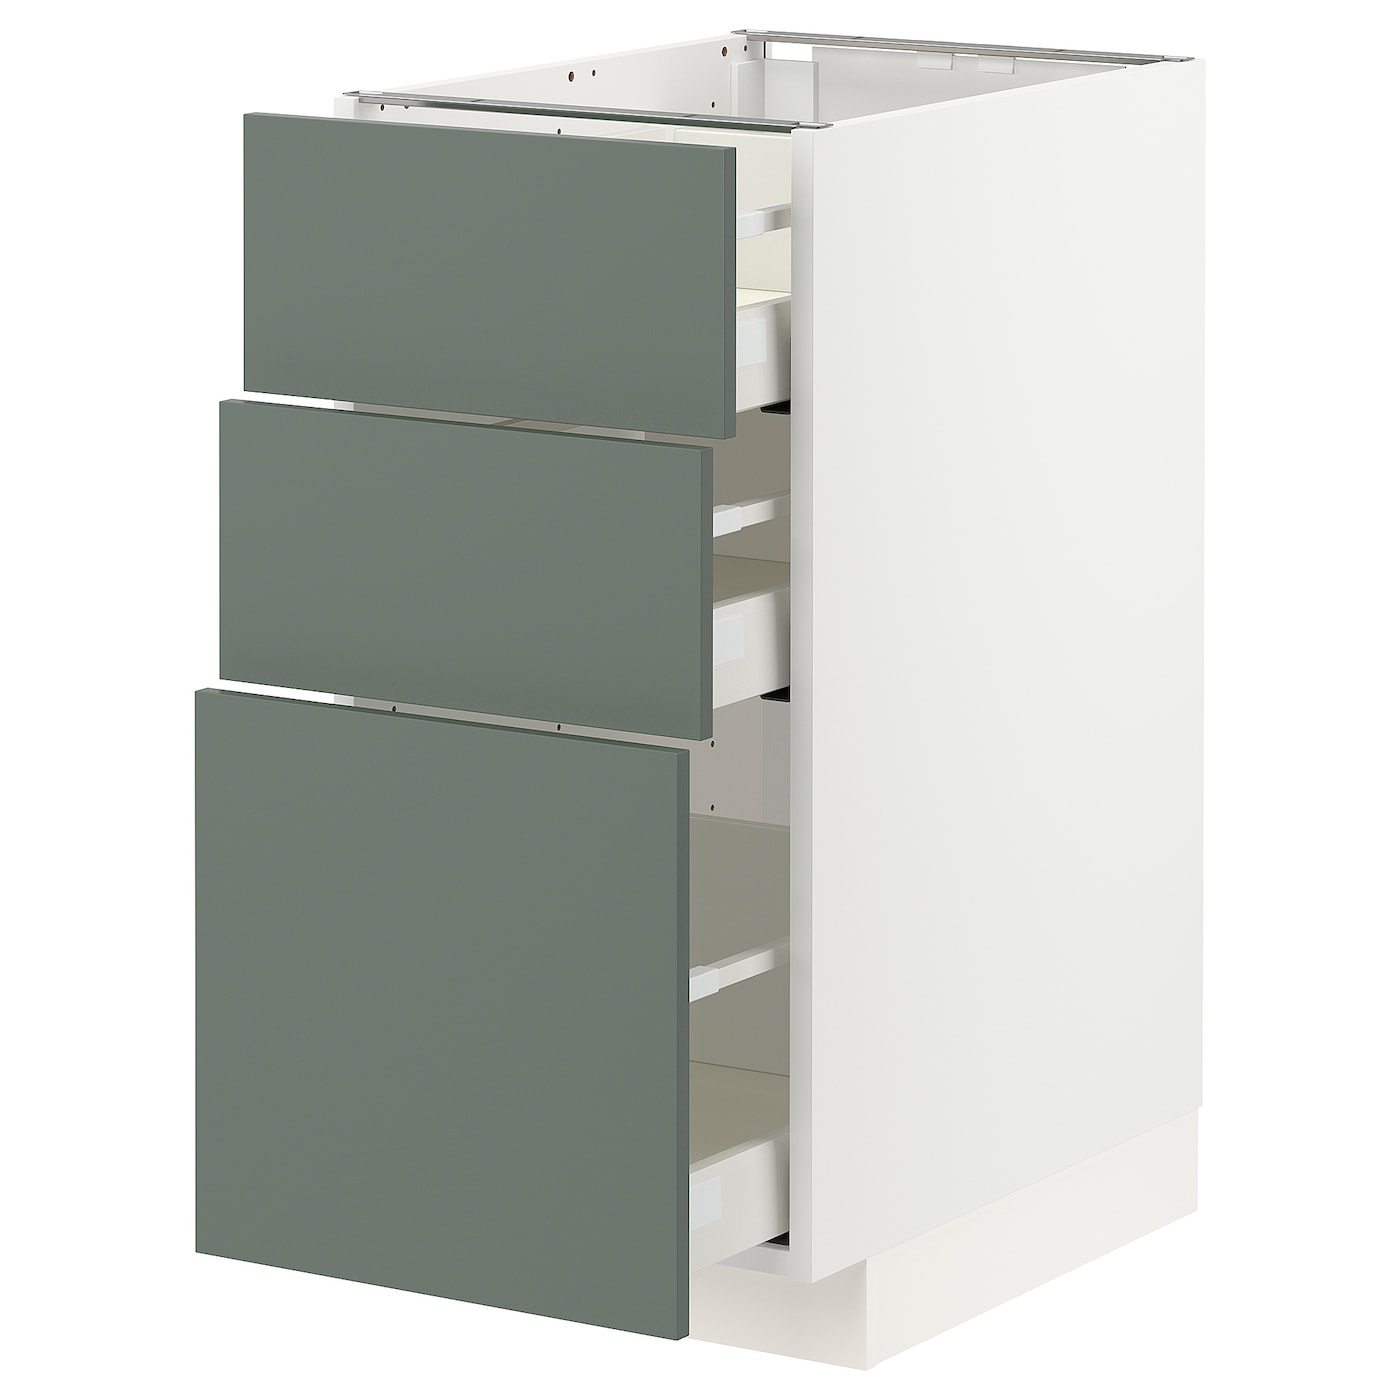 Напольный кухонный шкаф - IKEA METOD MAXIMERA, 88x62x40см, белый/серо-зеленый, МЕТОД МАКСИМЕРА ИКЕА